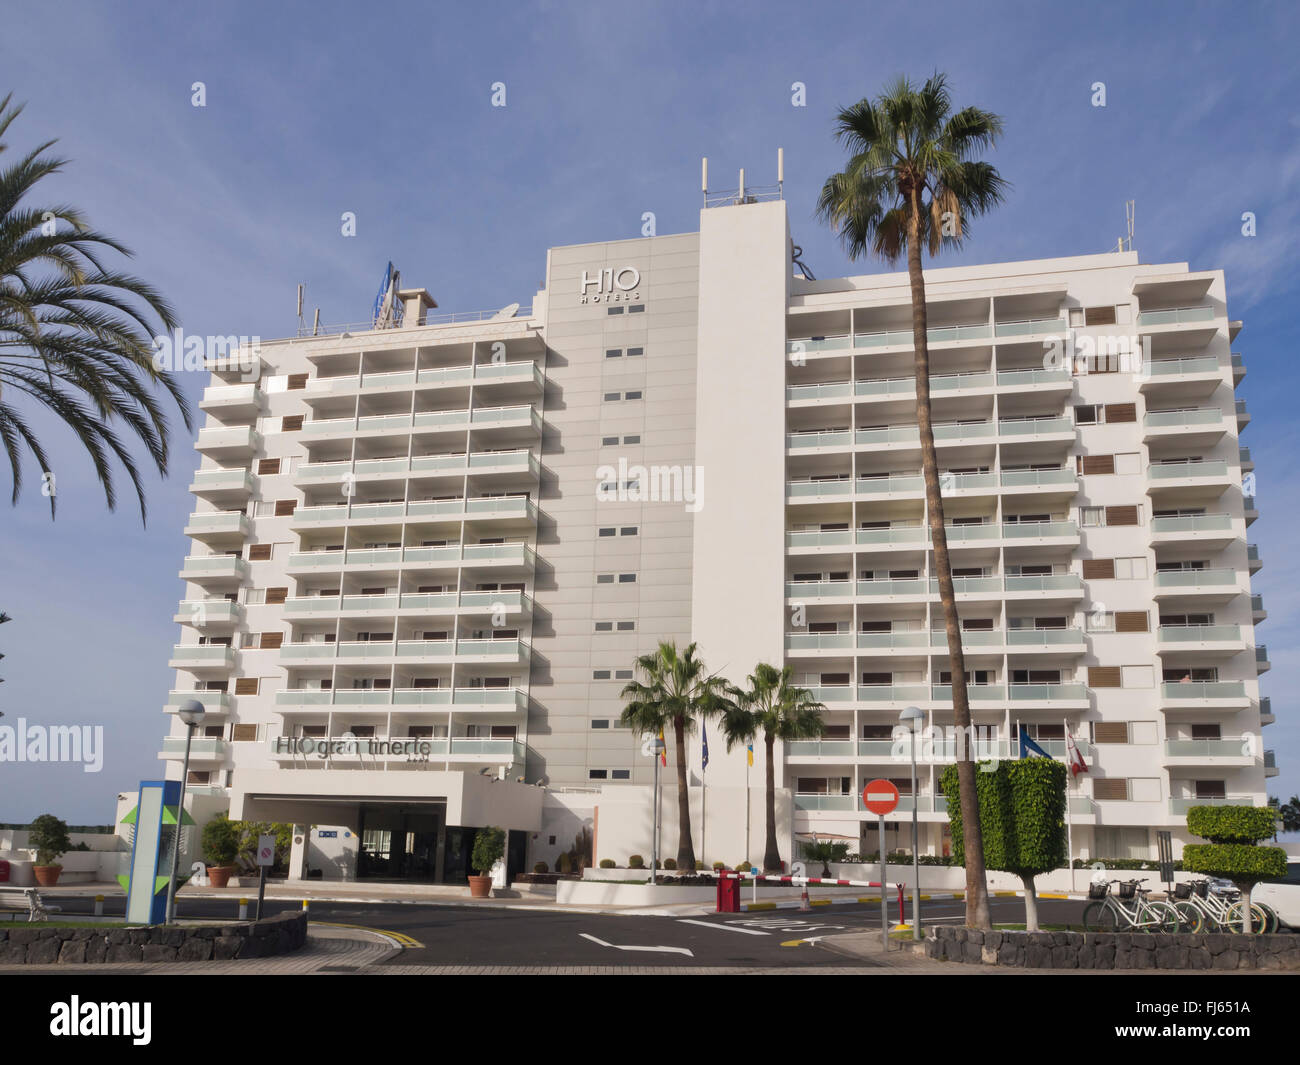 Hotel H10 Gran Tinerfe, hôtel 4 étoiles dans le complexe Playa de las  Americas à Tenerife, Îles Canaries Espagne Photo Stock - Alamy